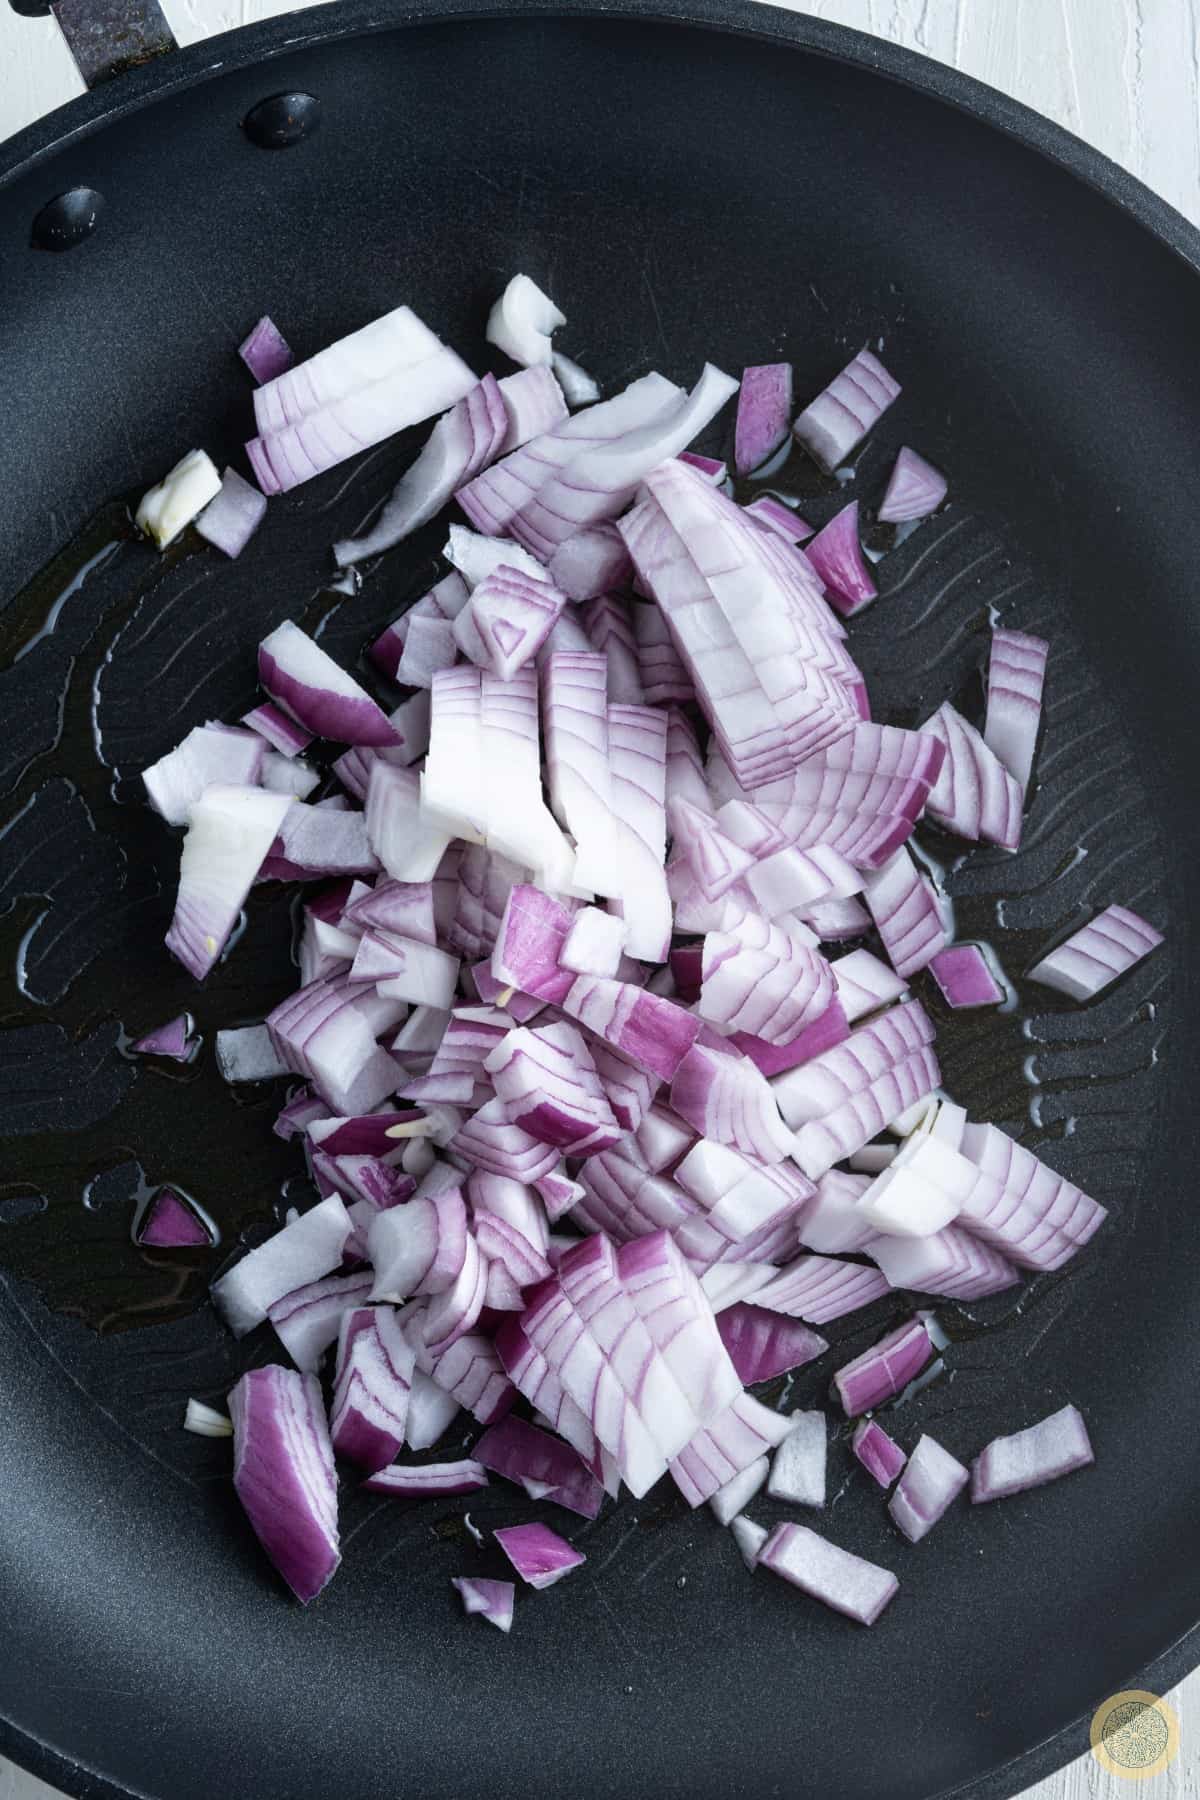 Prepare the onion